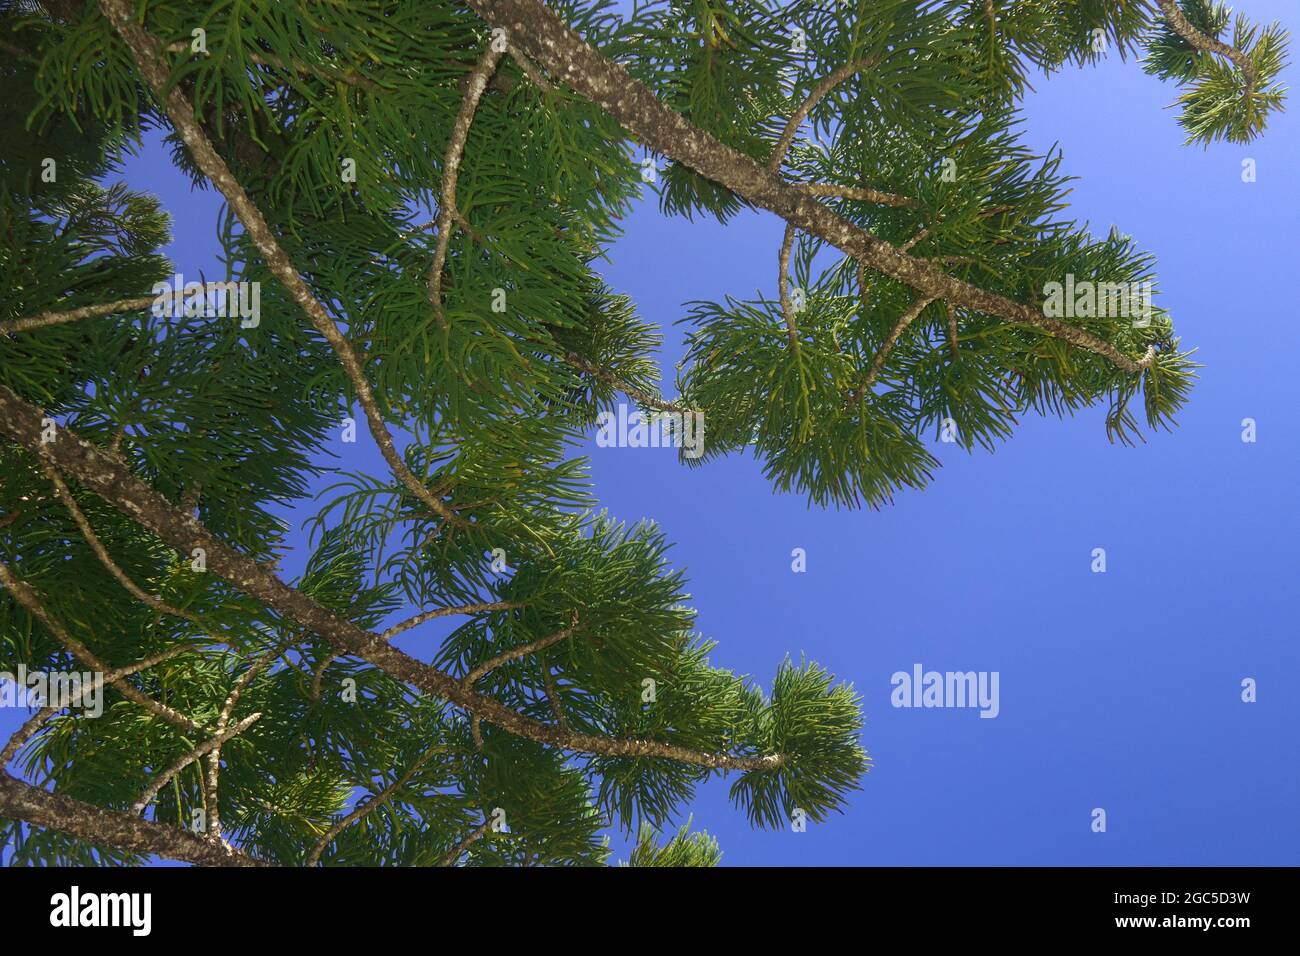 En regardant à travers des branches de pin à hoop (Araucauria) dans un ciel parfaitement bleu, l'île de Goldsmith, le parc national des îles Whitsunday, Queensland, Australie Banque D'Images